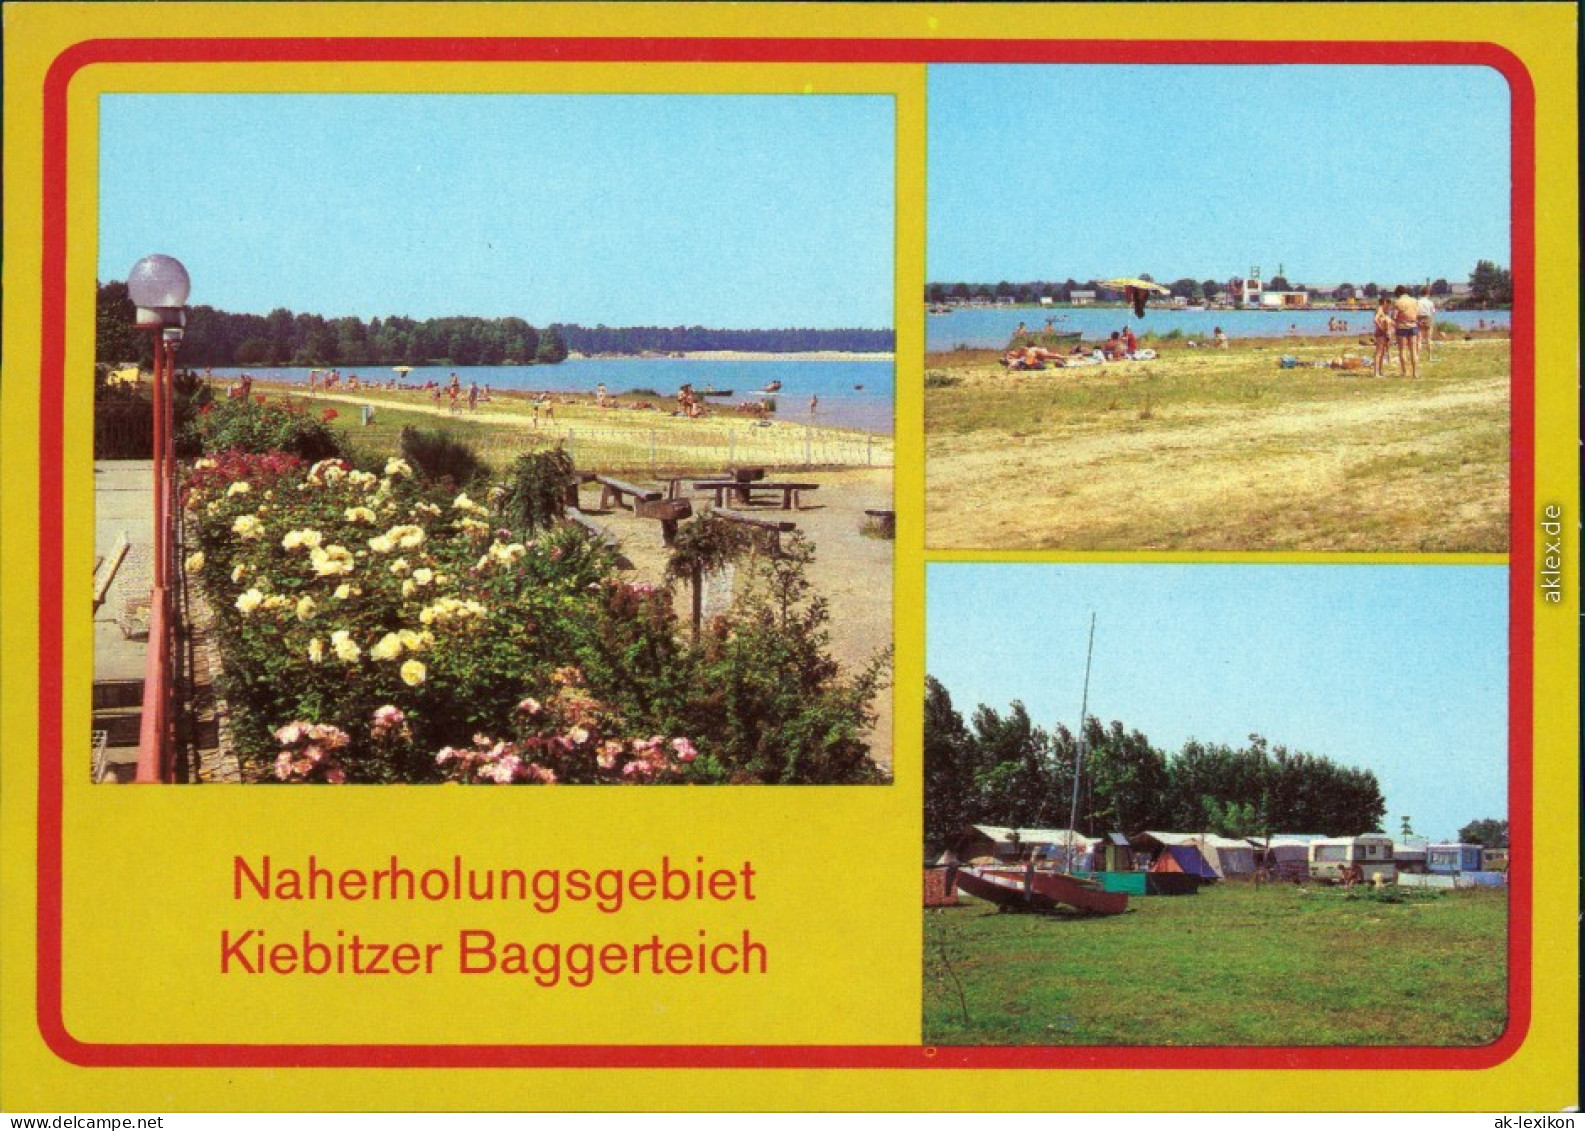 Falkenberg (Elster) Naherholungsgebiet Kiebitzer Baggerteich 1982 - Falkenberg